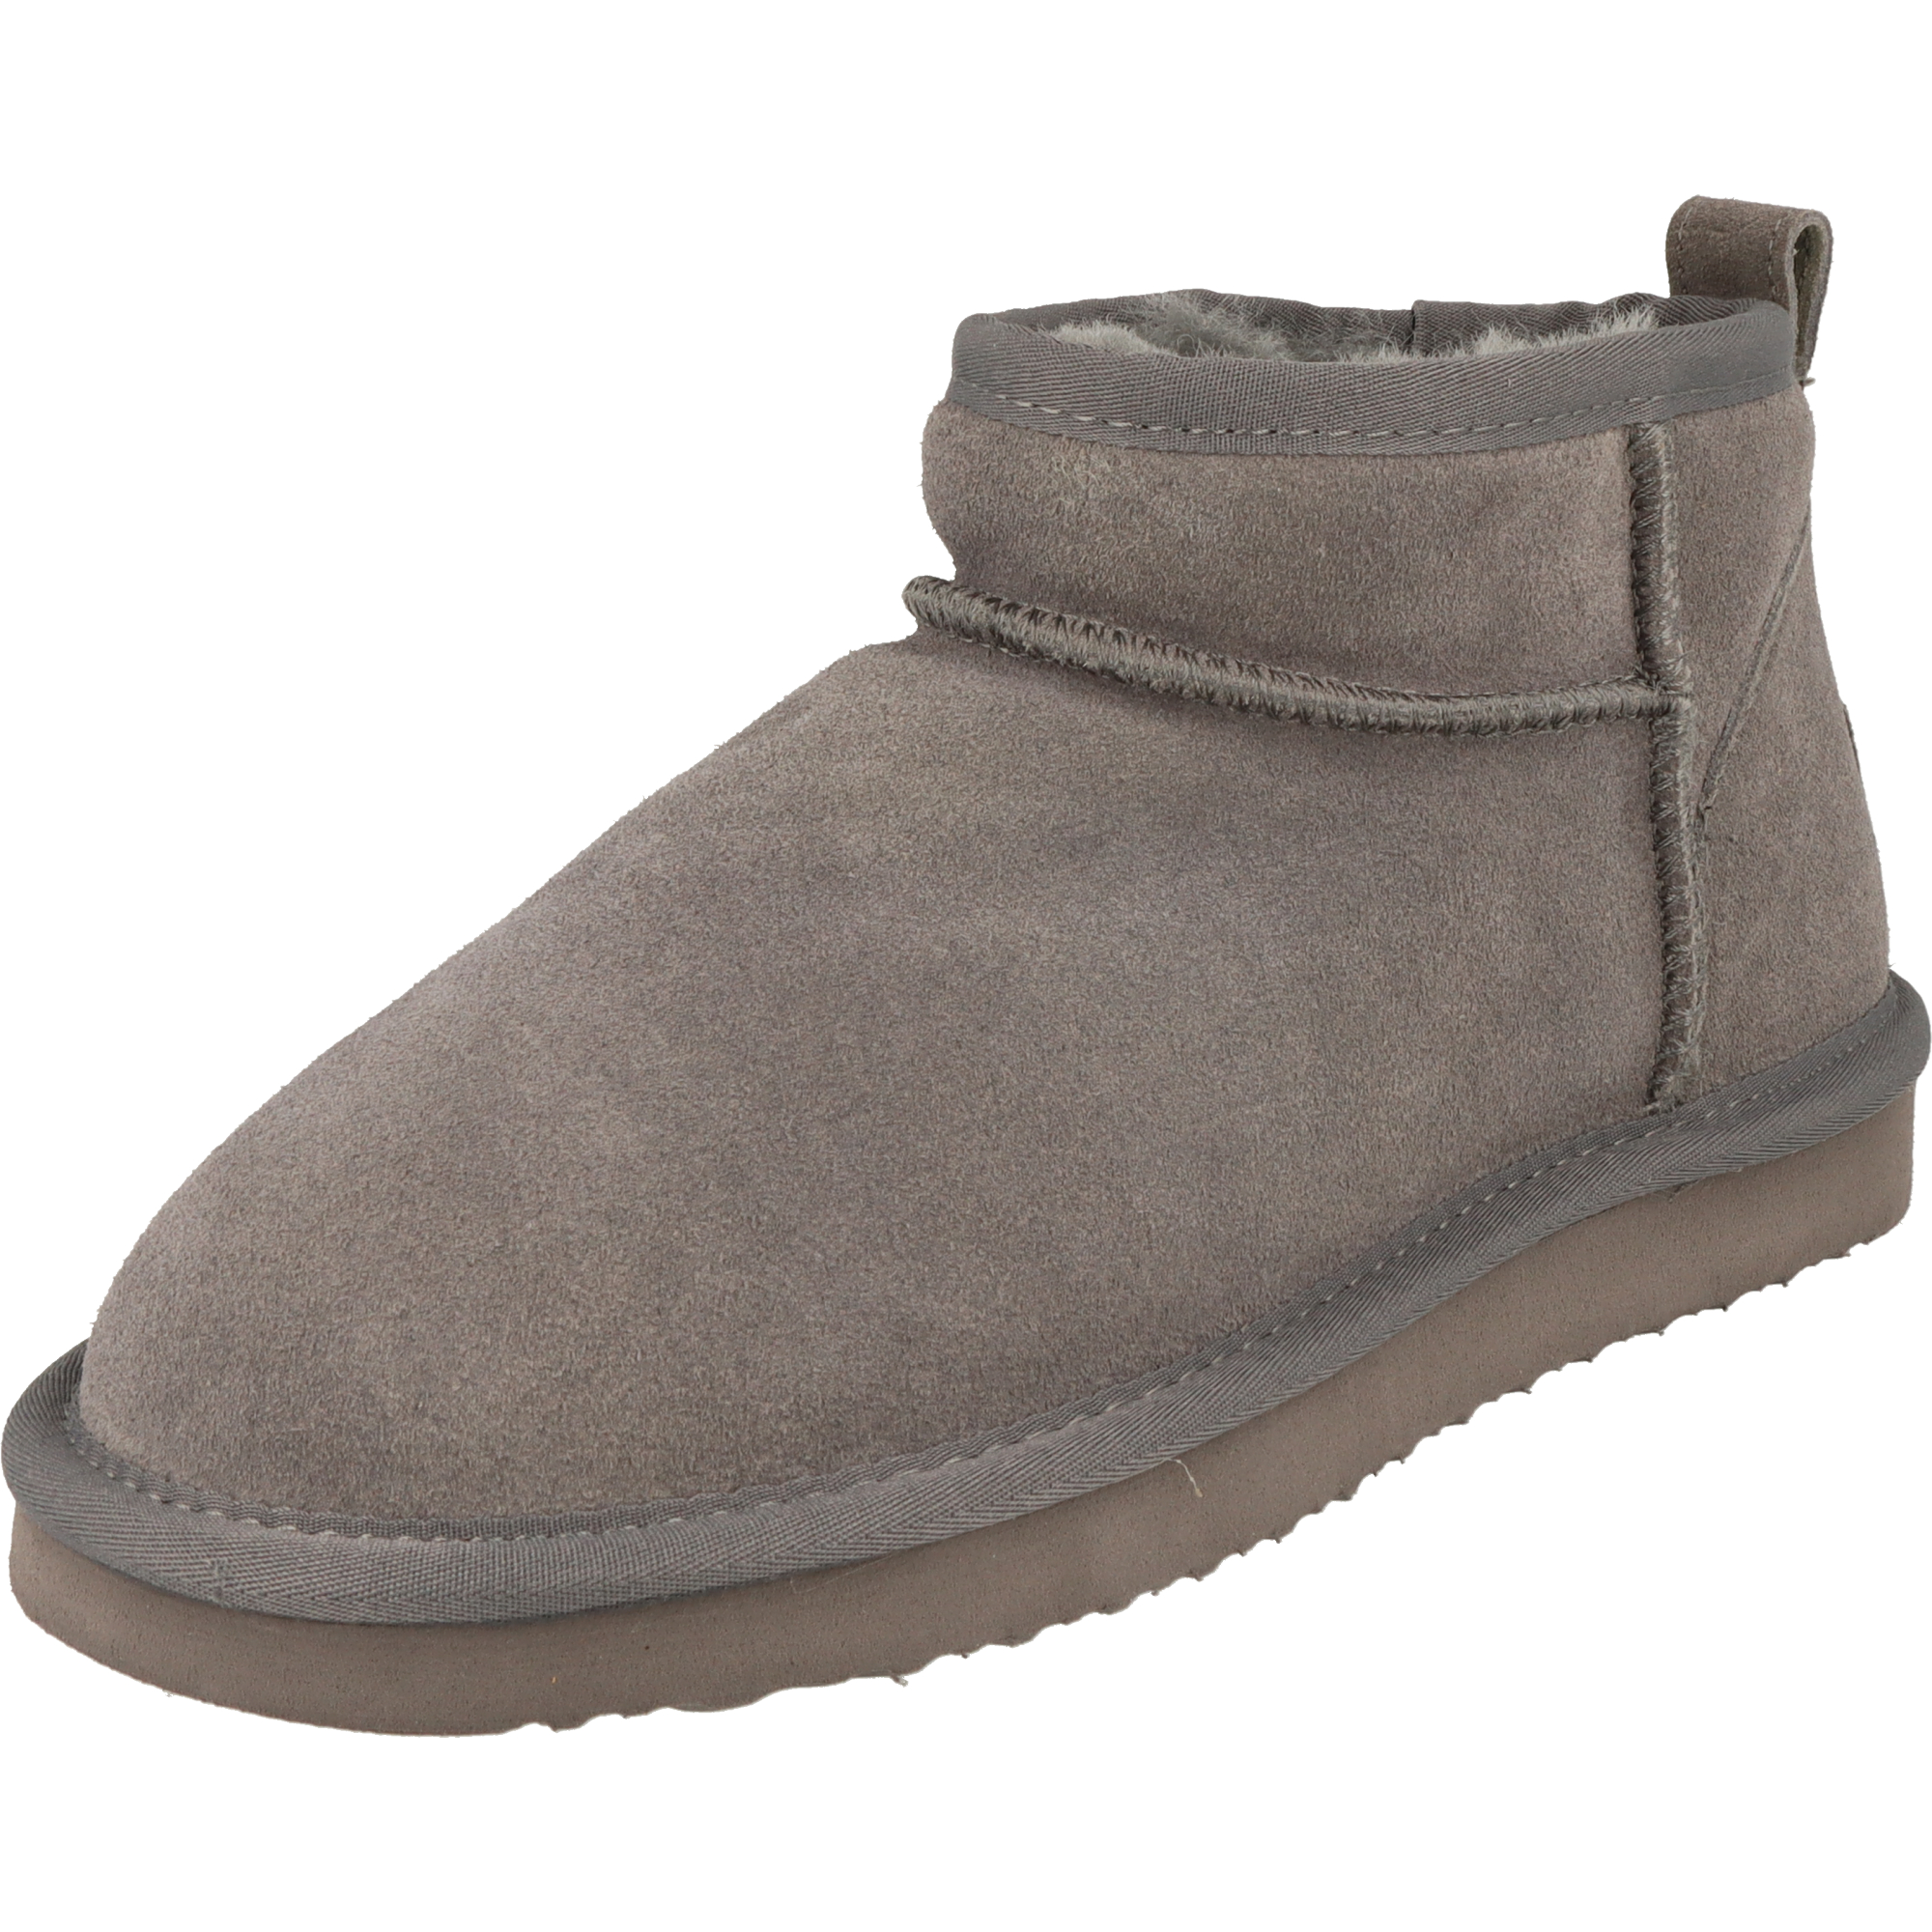 Piece Of Mind Damen Schuhe Winter Low-Cut Leder Boots 264-718 gefüttert Dk.Grey